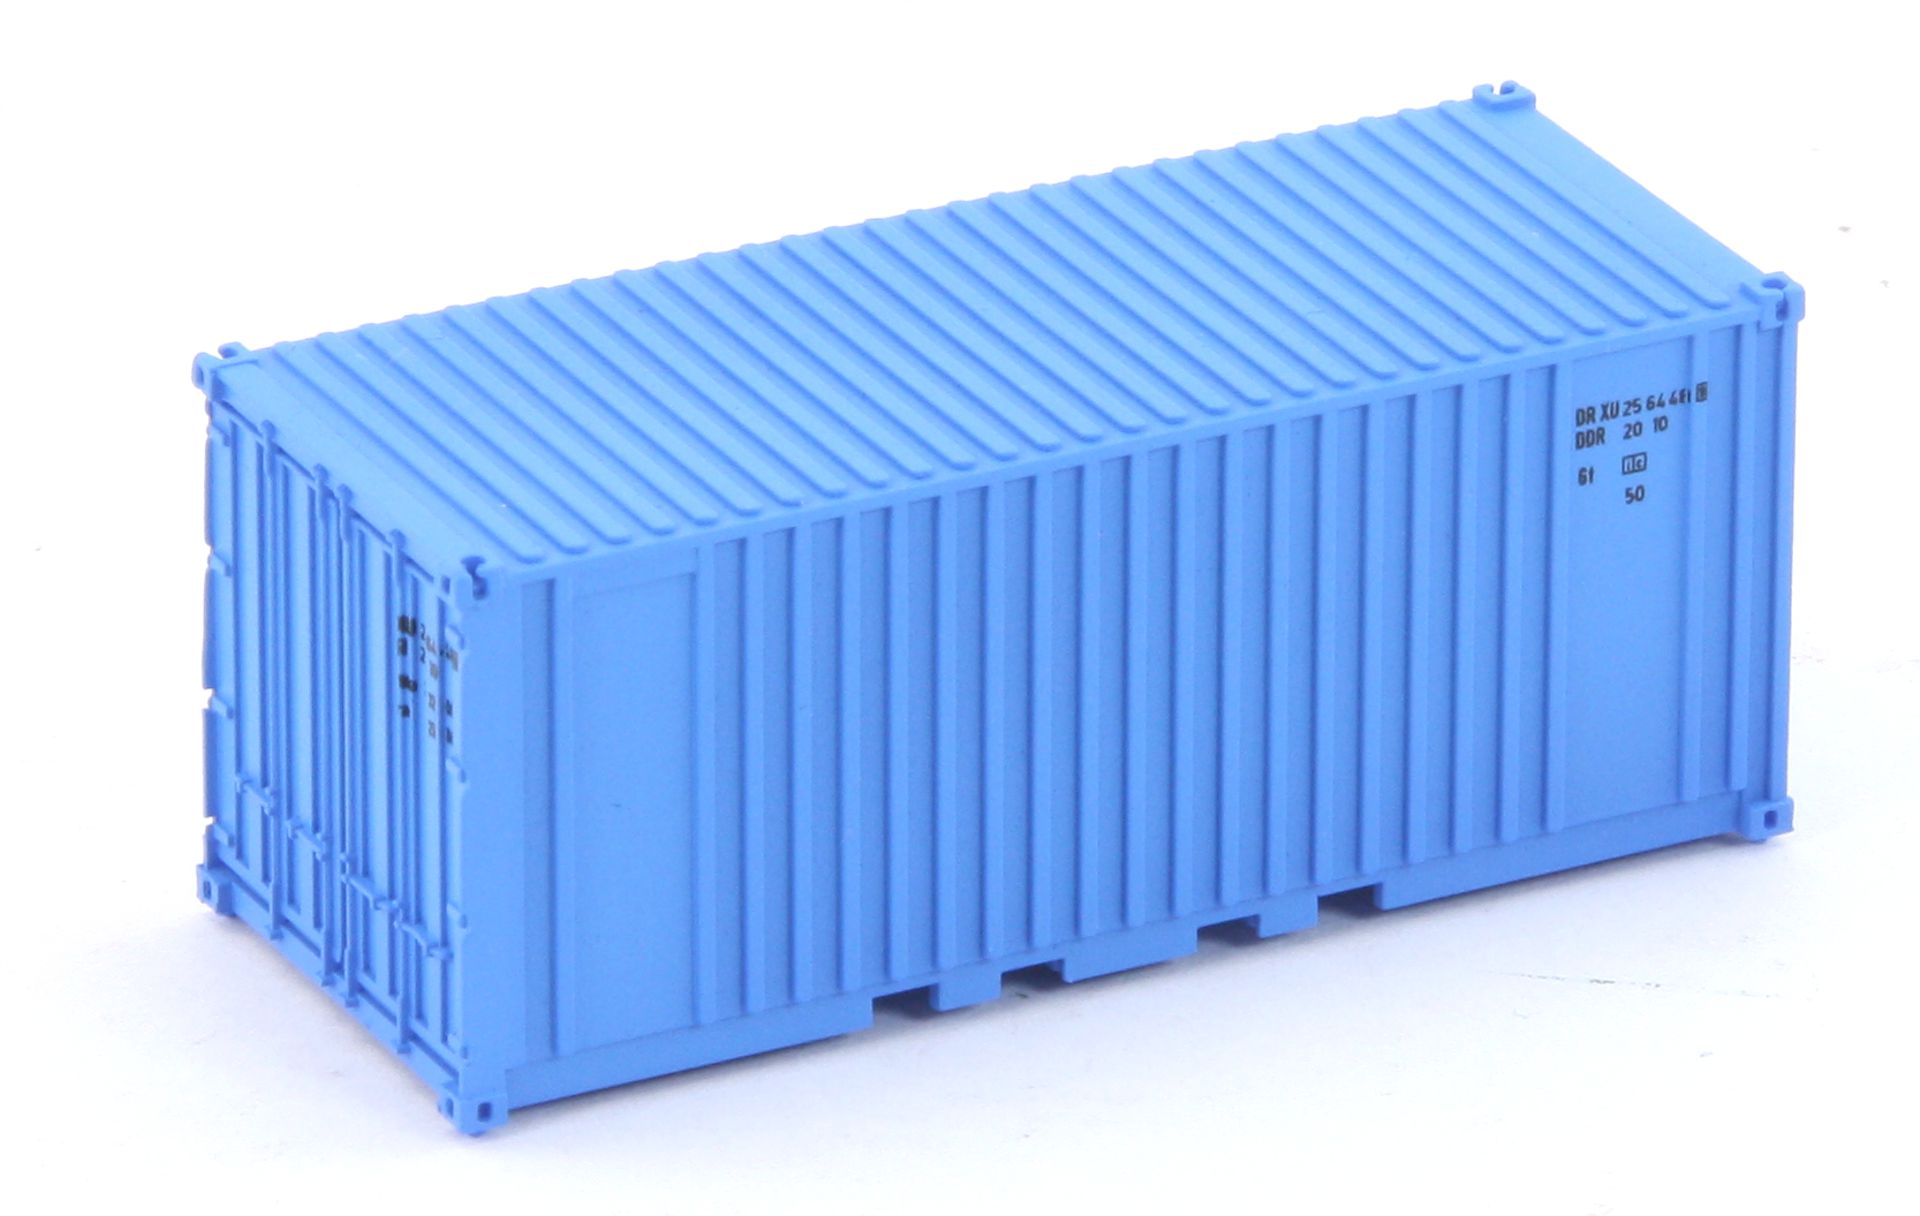 Hädl 711001-03 - Container, 20 Fuß, blau, DR